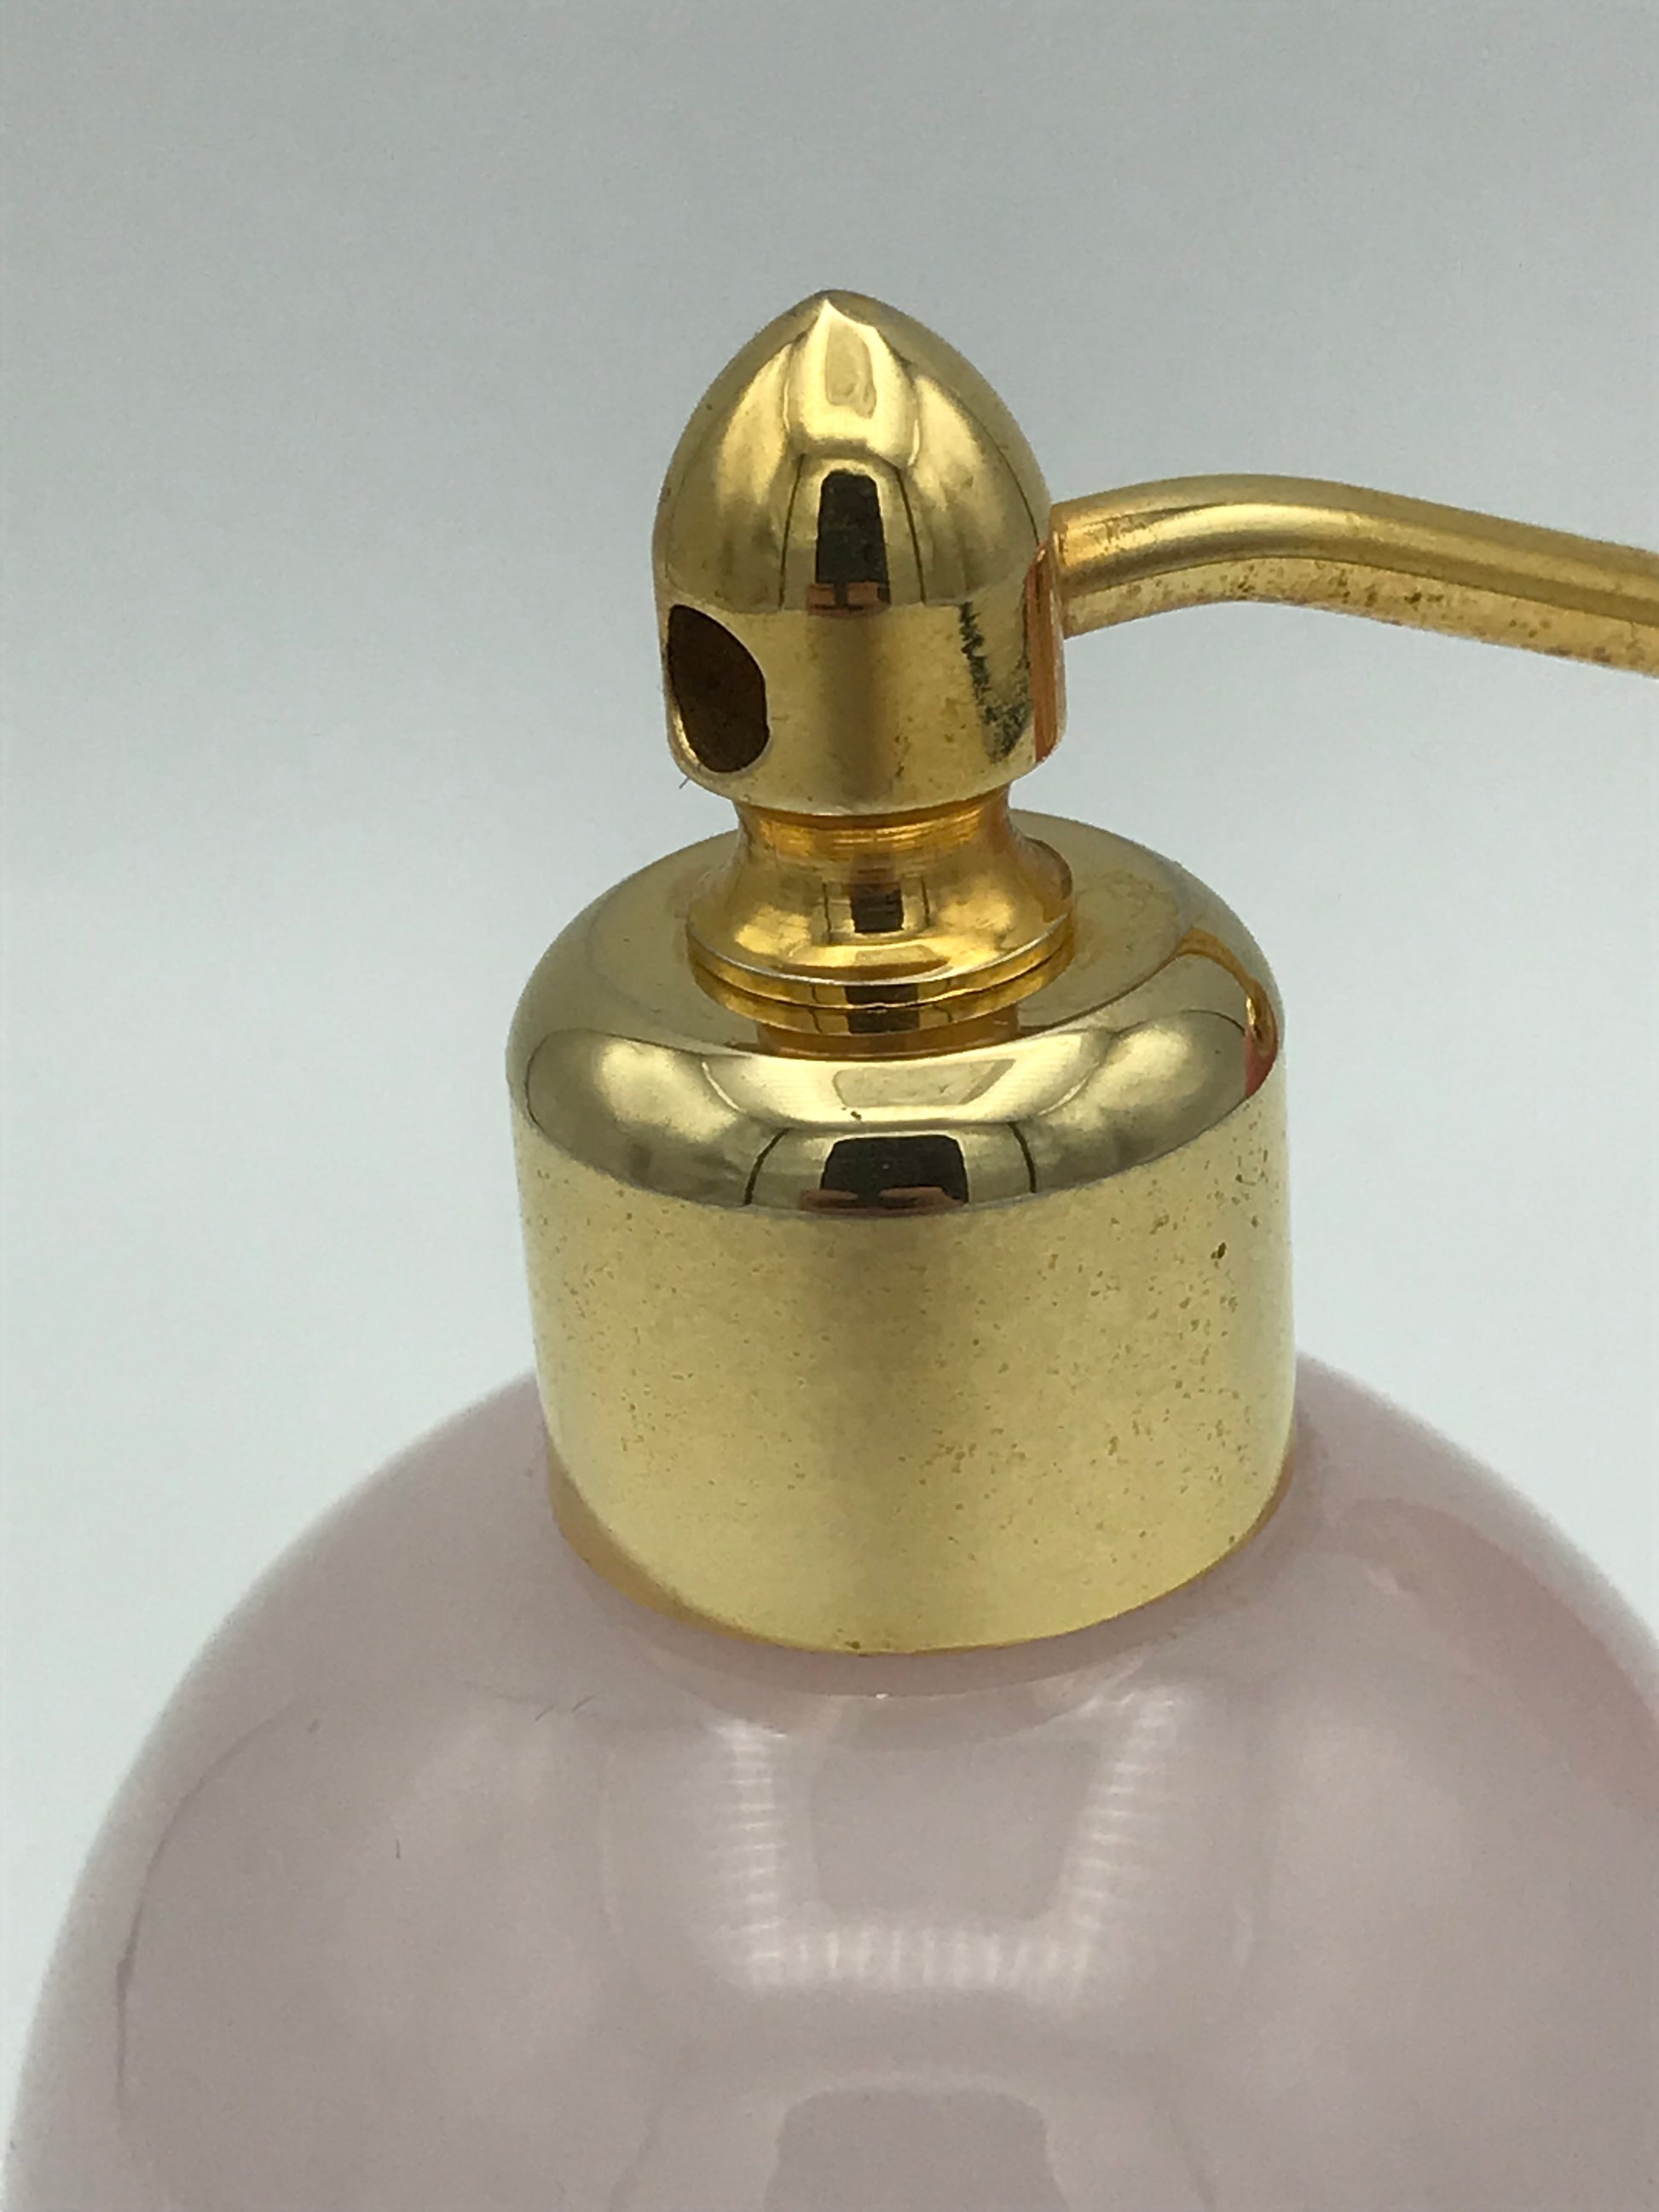 Vaporisateur à parfum opaline - Premium Vaporisateur à parfum from Atelier Guillot - Just €210! Shop now at Atelier Guillot